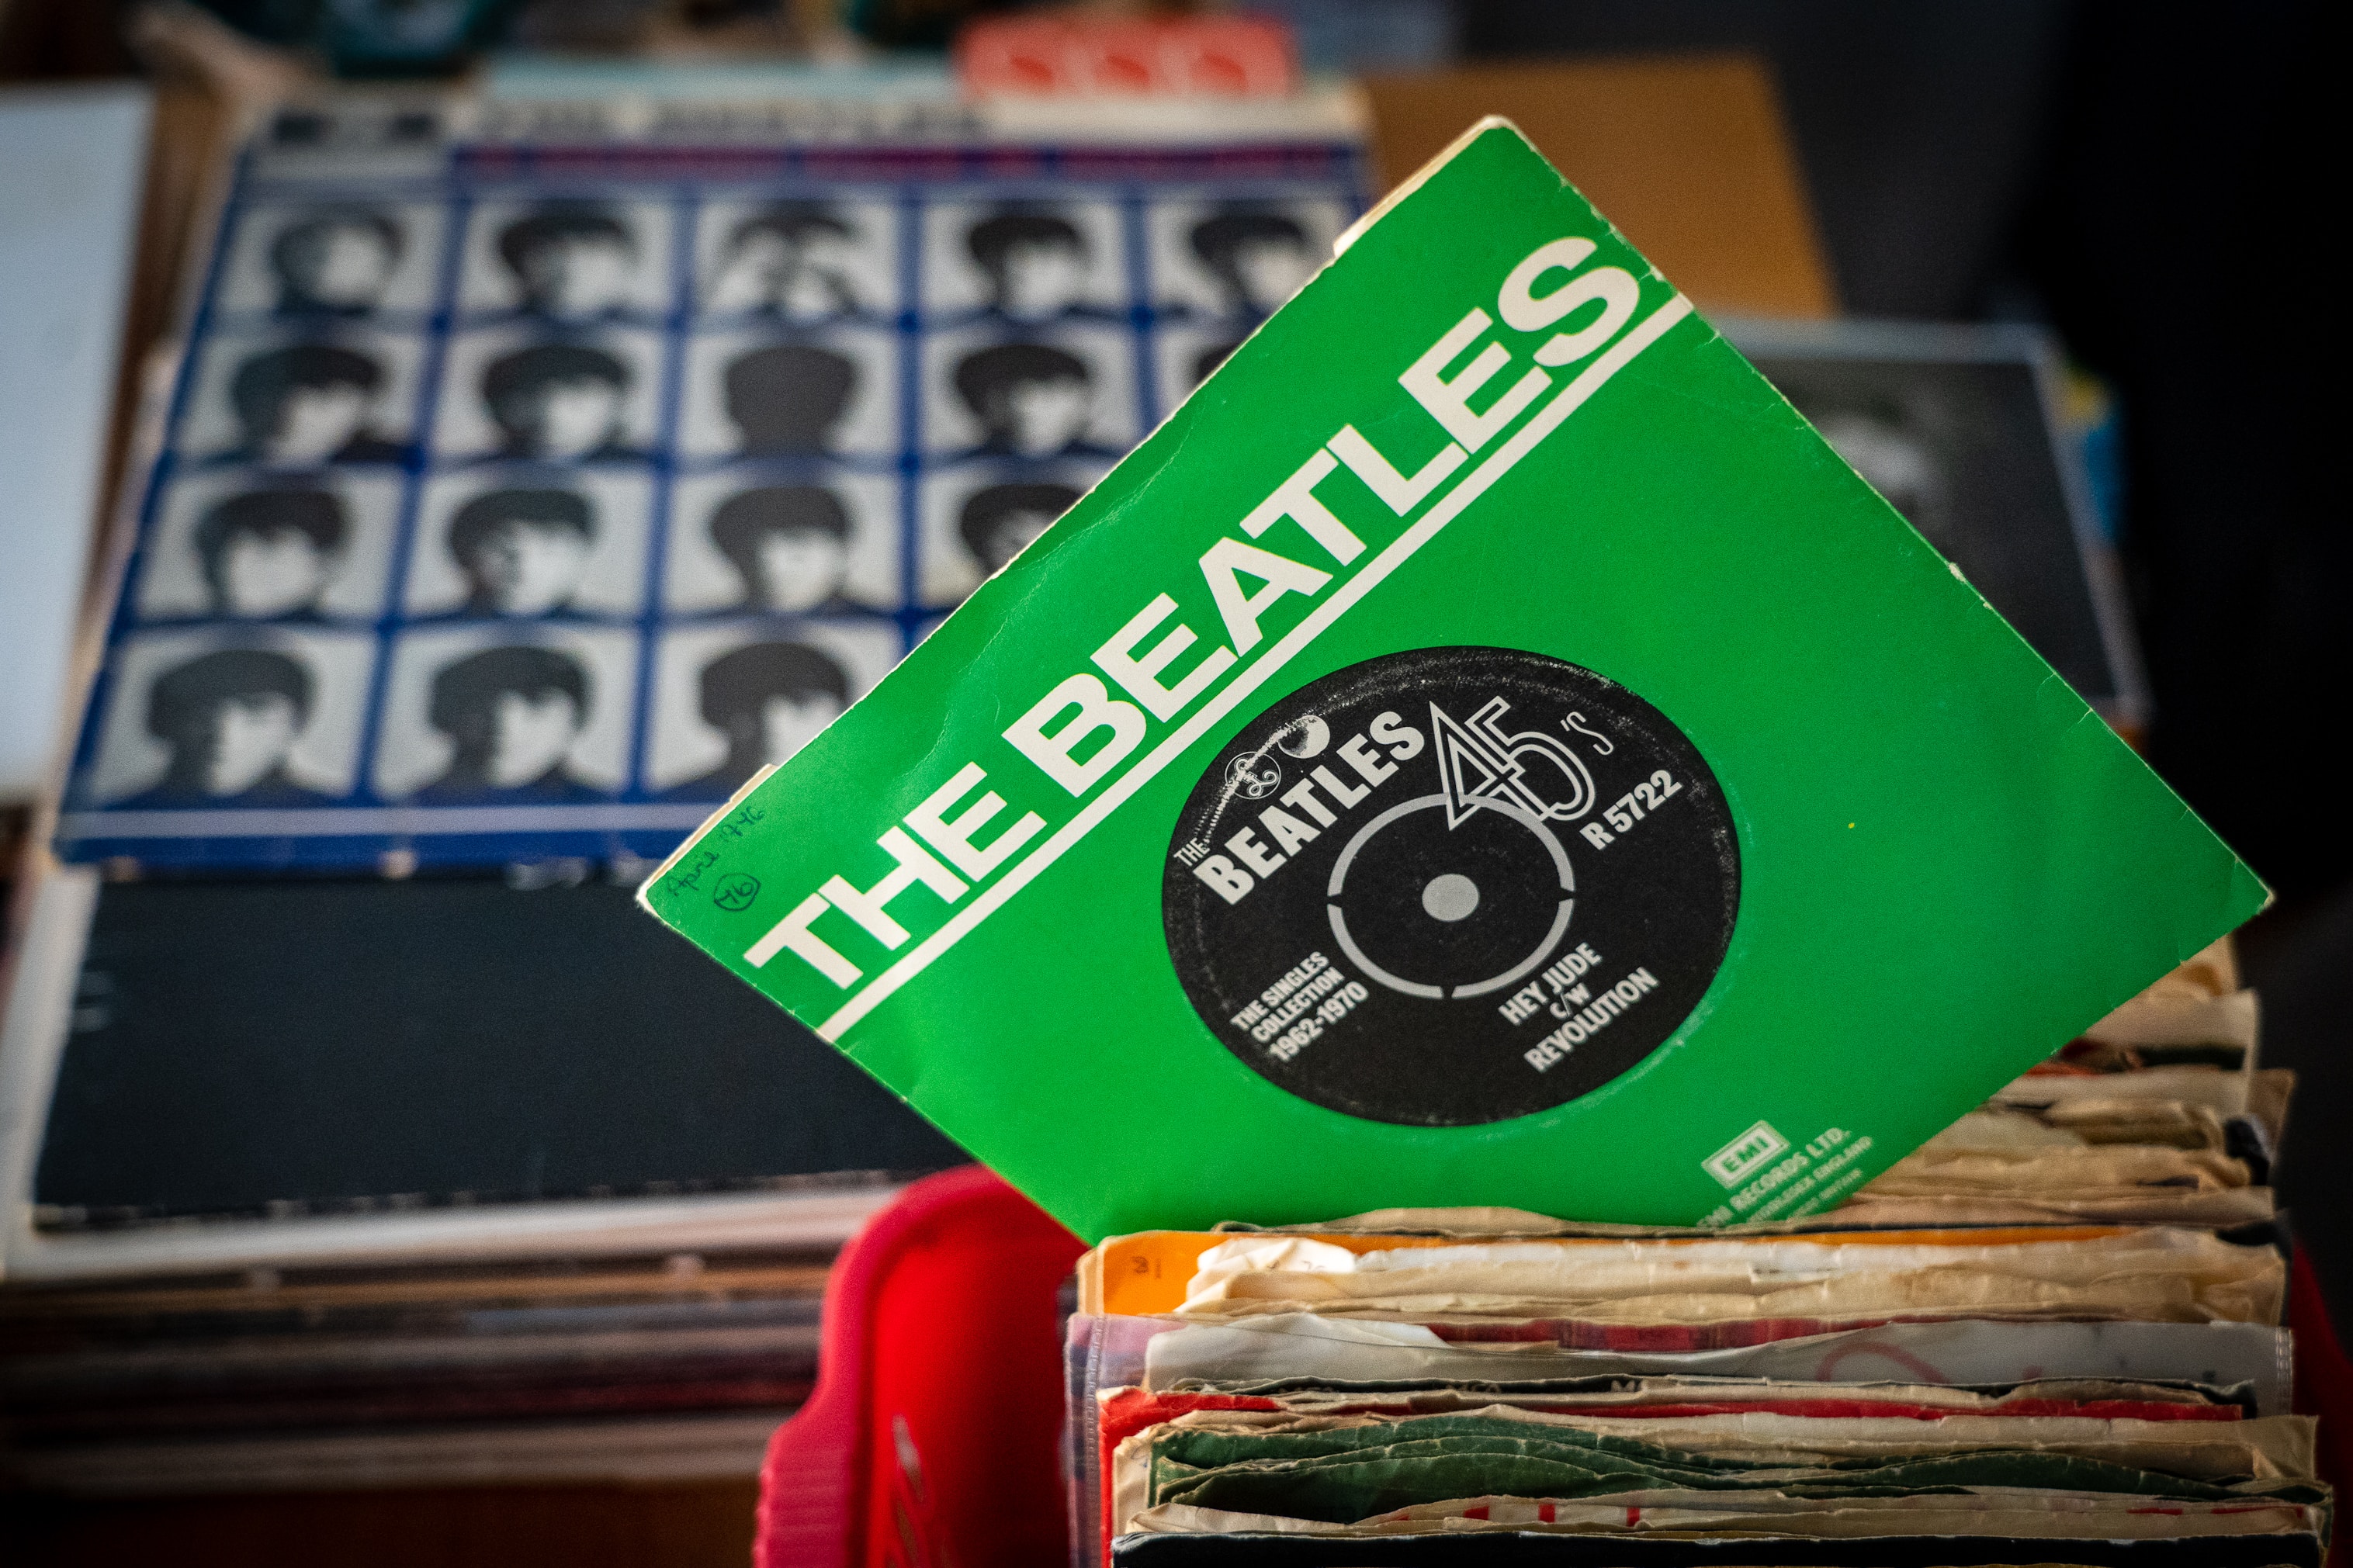 The Beatles album